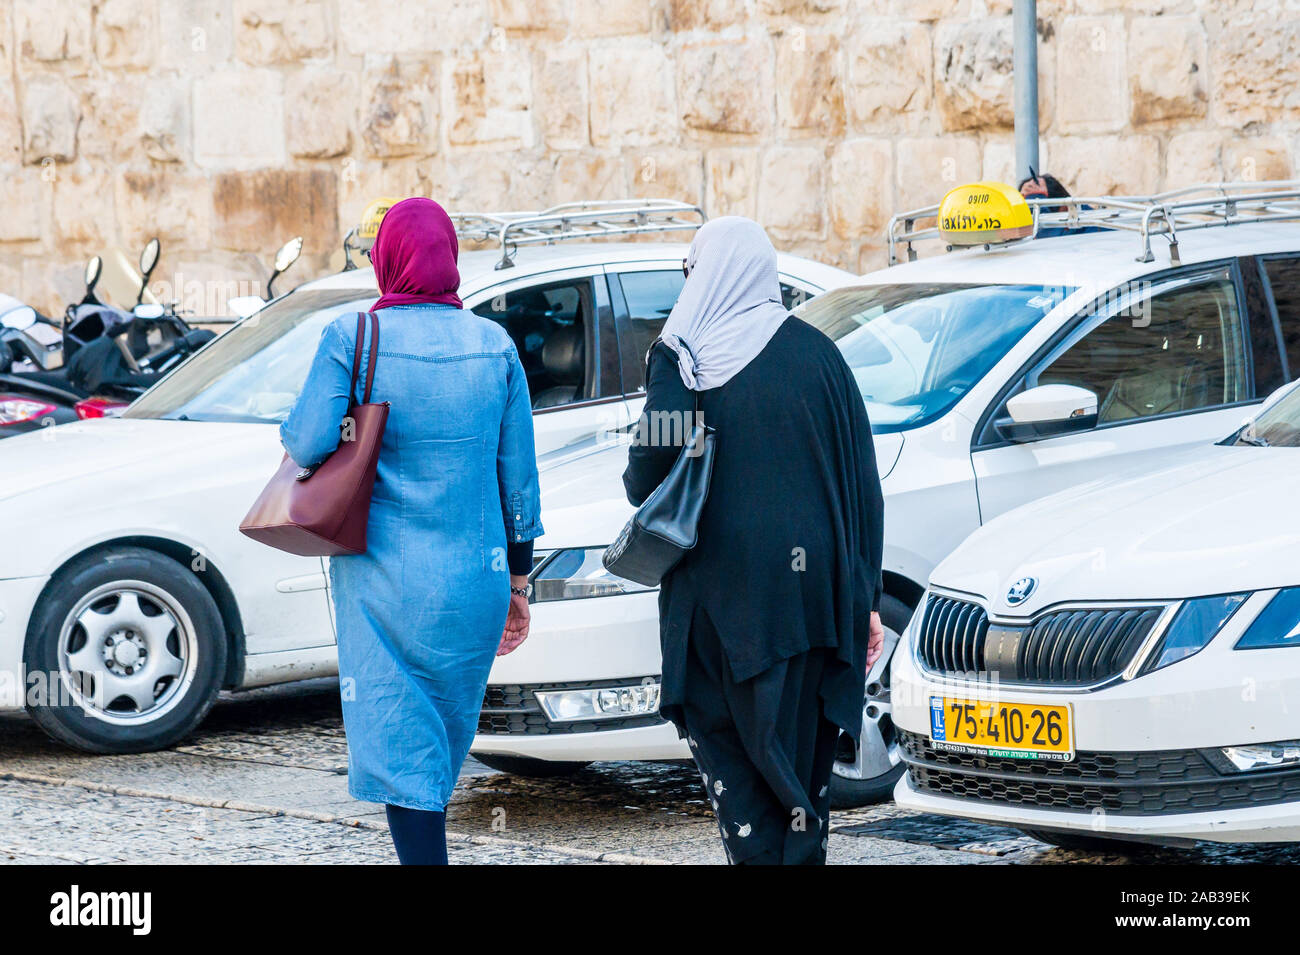 Jérusalem, Israël / 25 NOV 2019 : Deux femmes musulmanes portant le foulard (hijbas mandaté par la loi islamique), la vieille ville de Jérusalem Banque D'Images